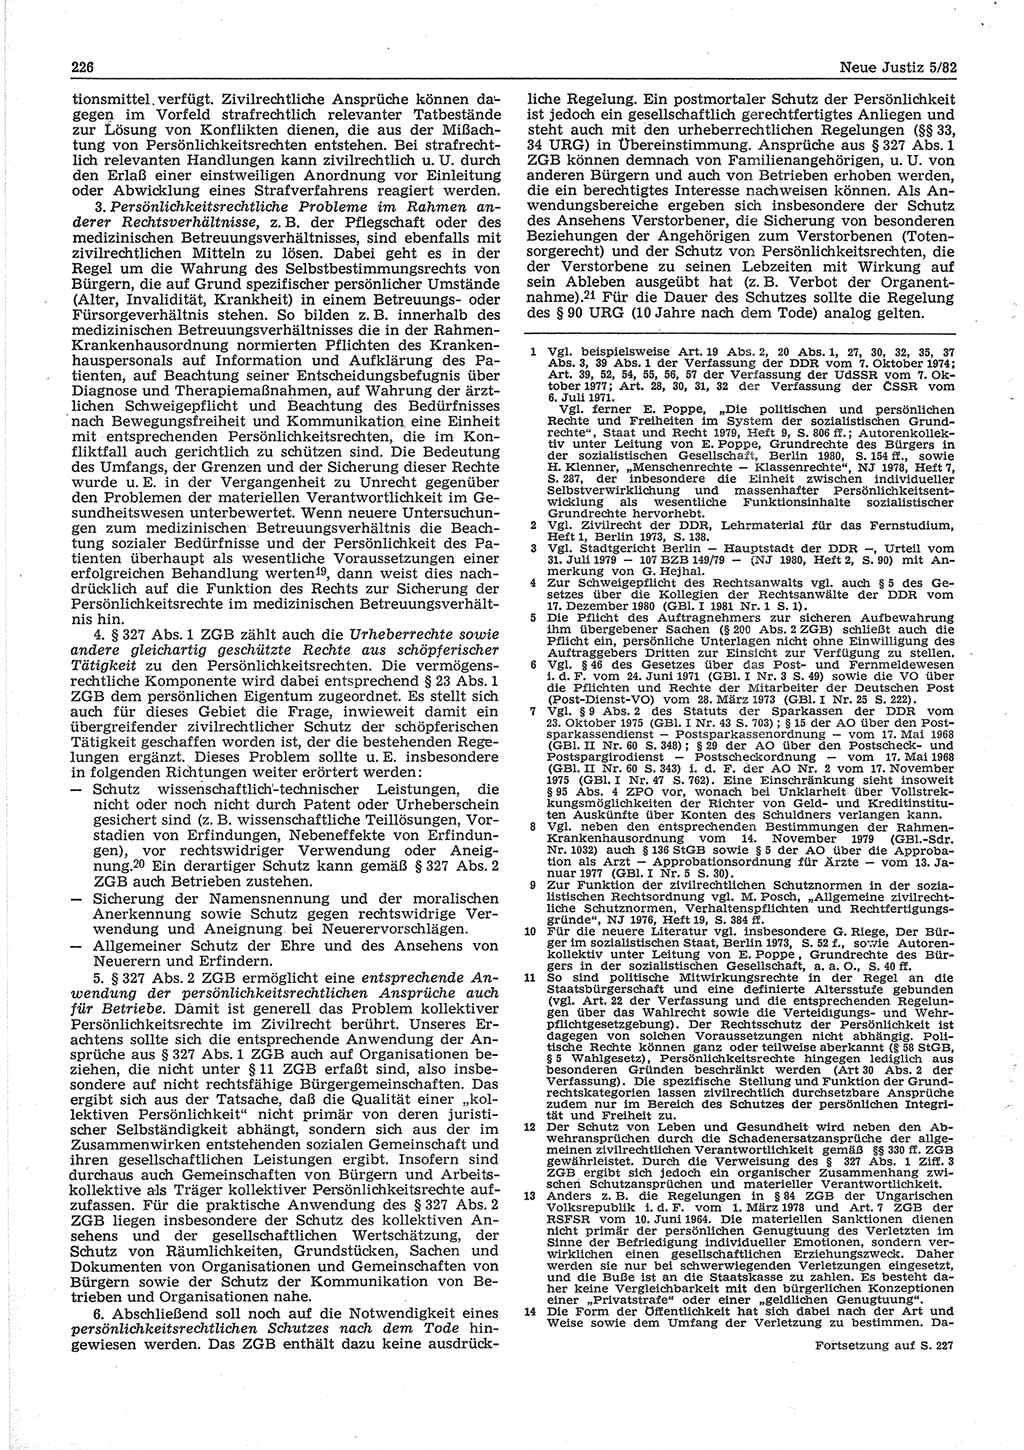 Neue Justiz (NJ), Zeitschrift für sozialistisches Recht und Gesetzlichkeit [Deutsche Demokratische Republik (DDR)], 36. Jahrgang 1982, Seite 226 (NJ DDR 1982, S. 226)